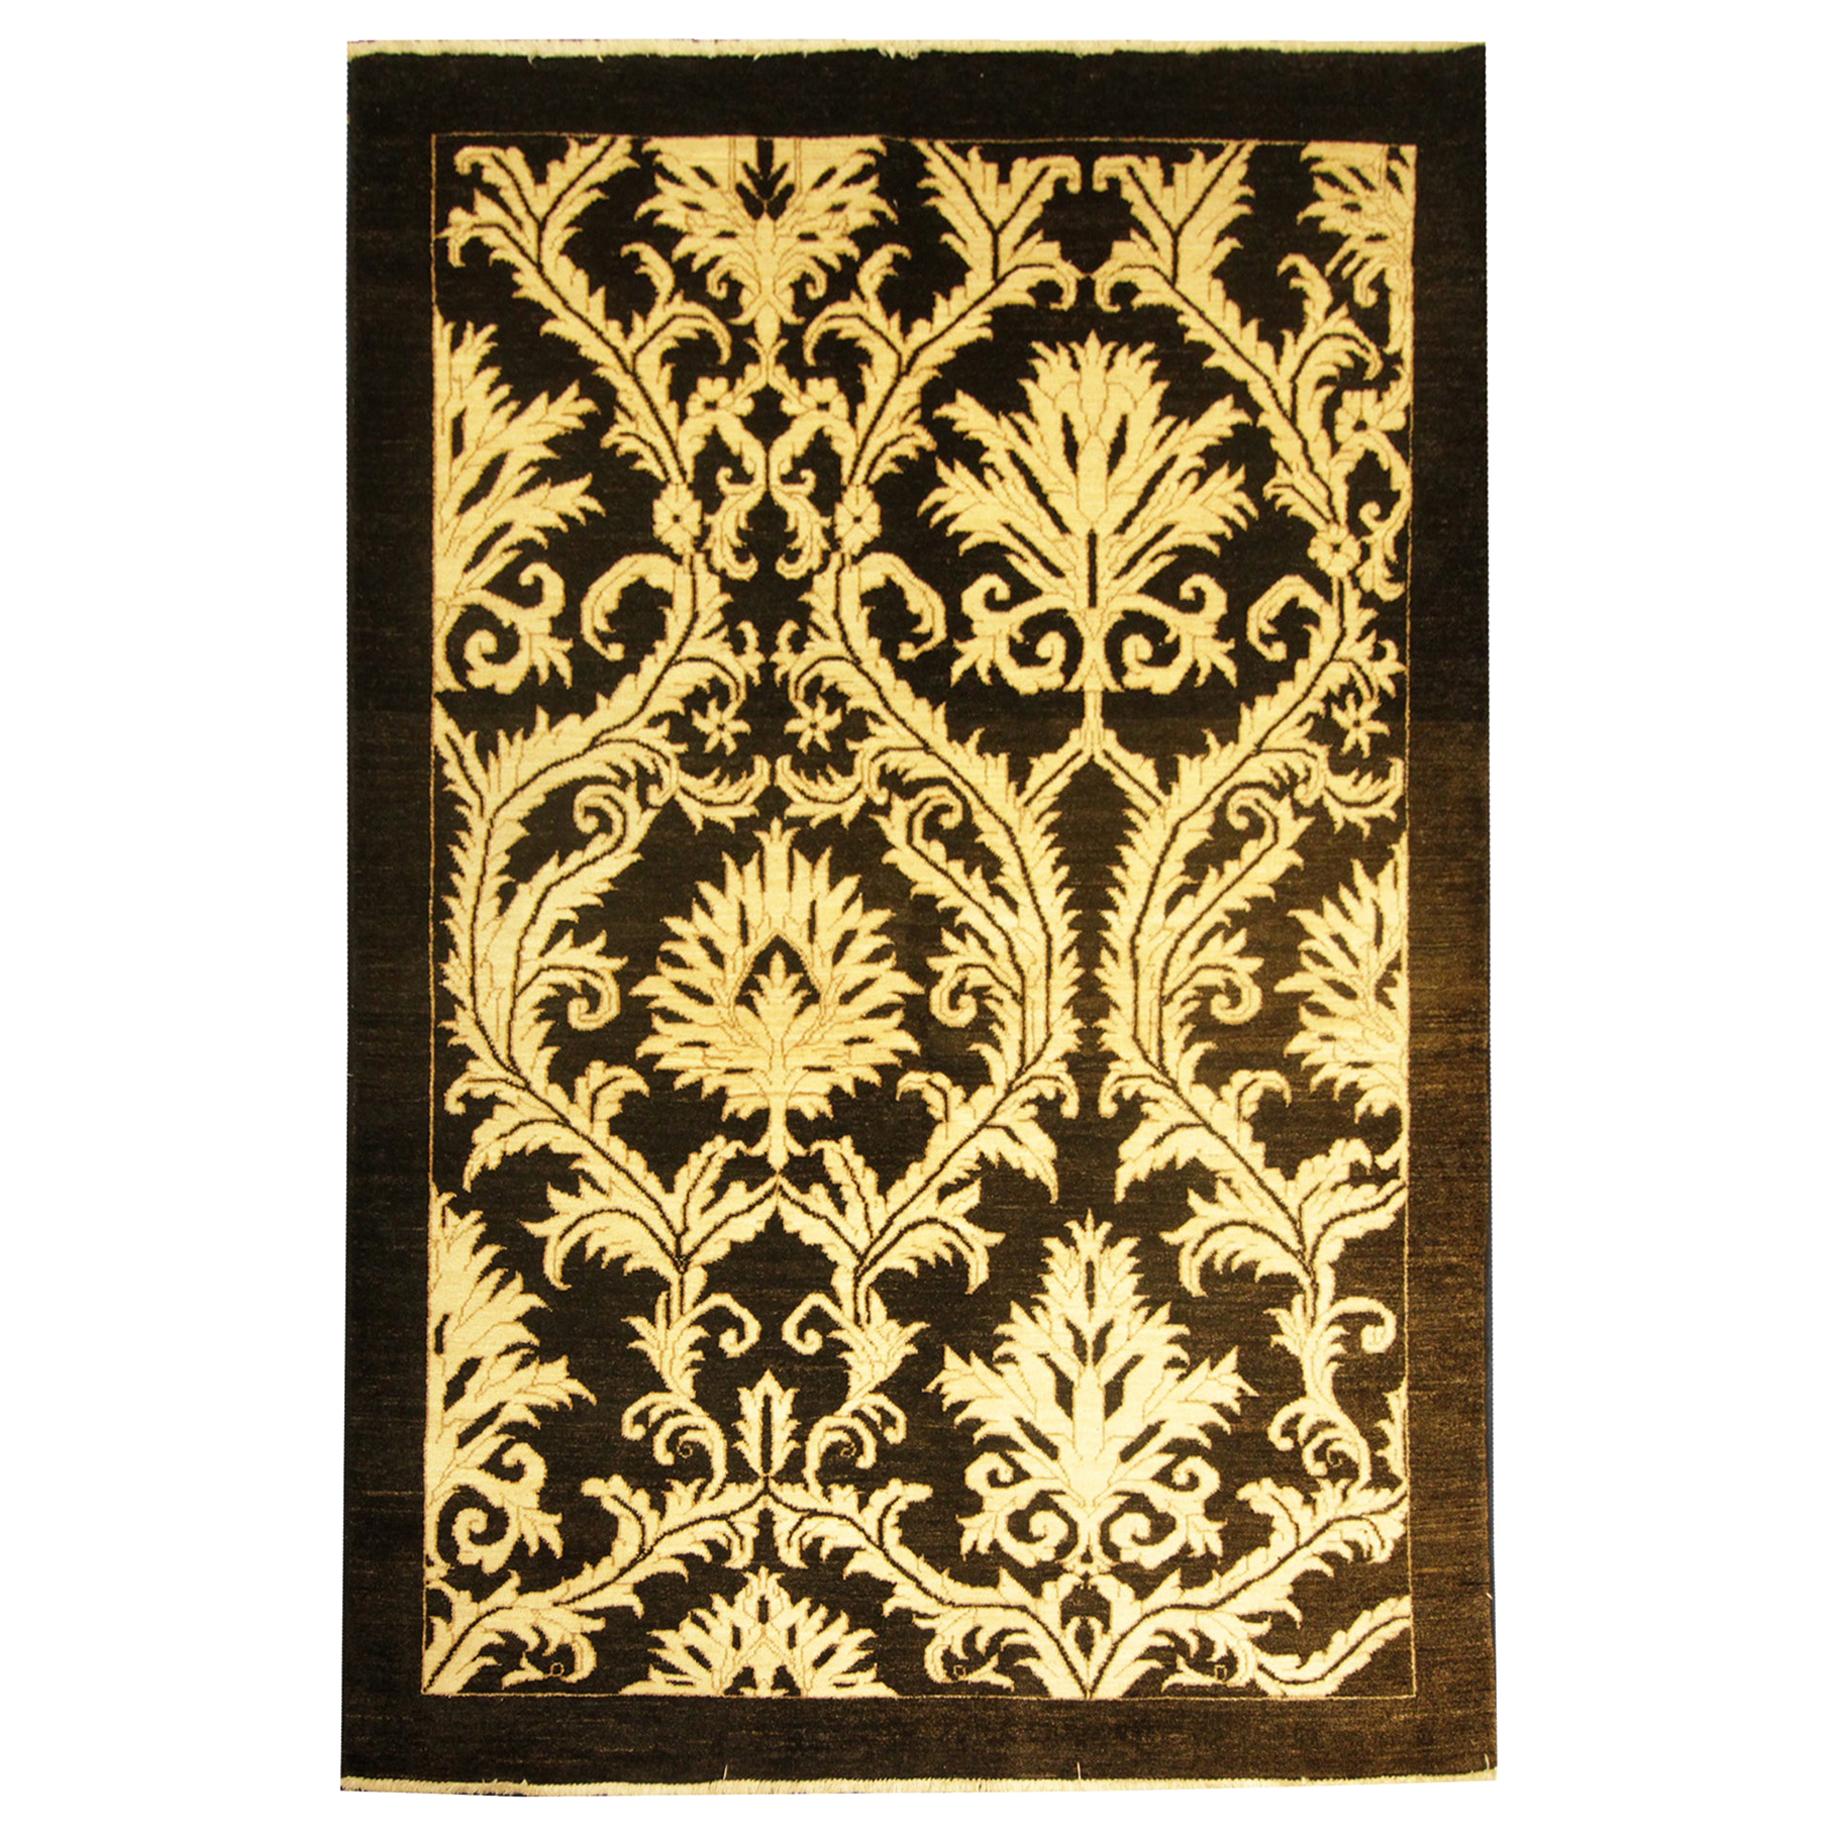 Tapis de sol, tapis oriental turc Tapis damassé or et noir